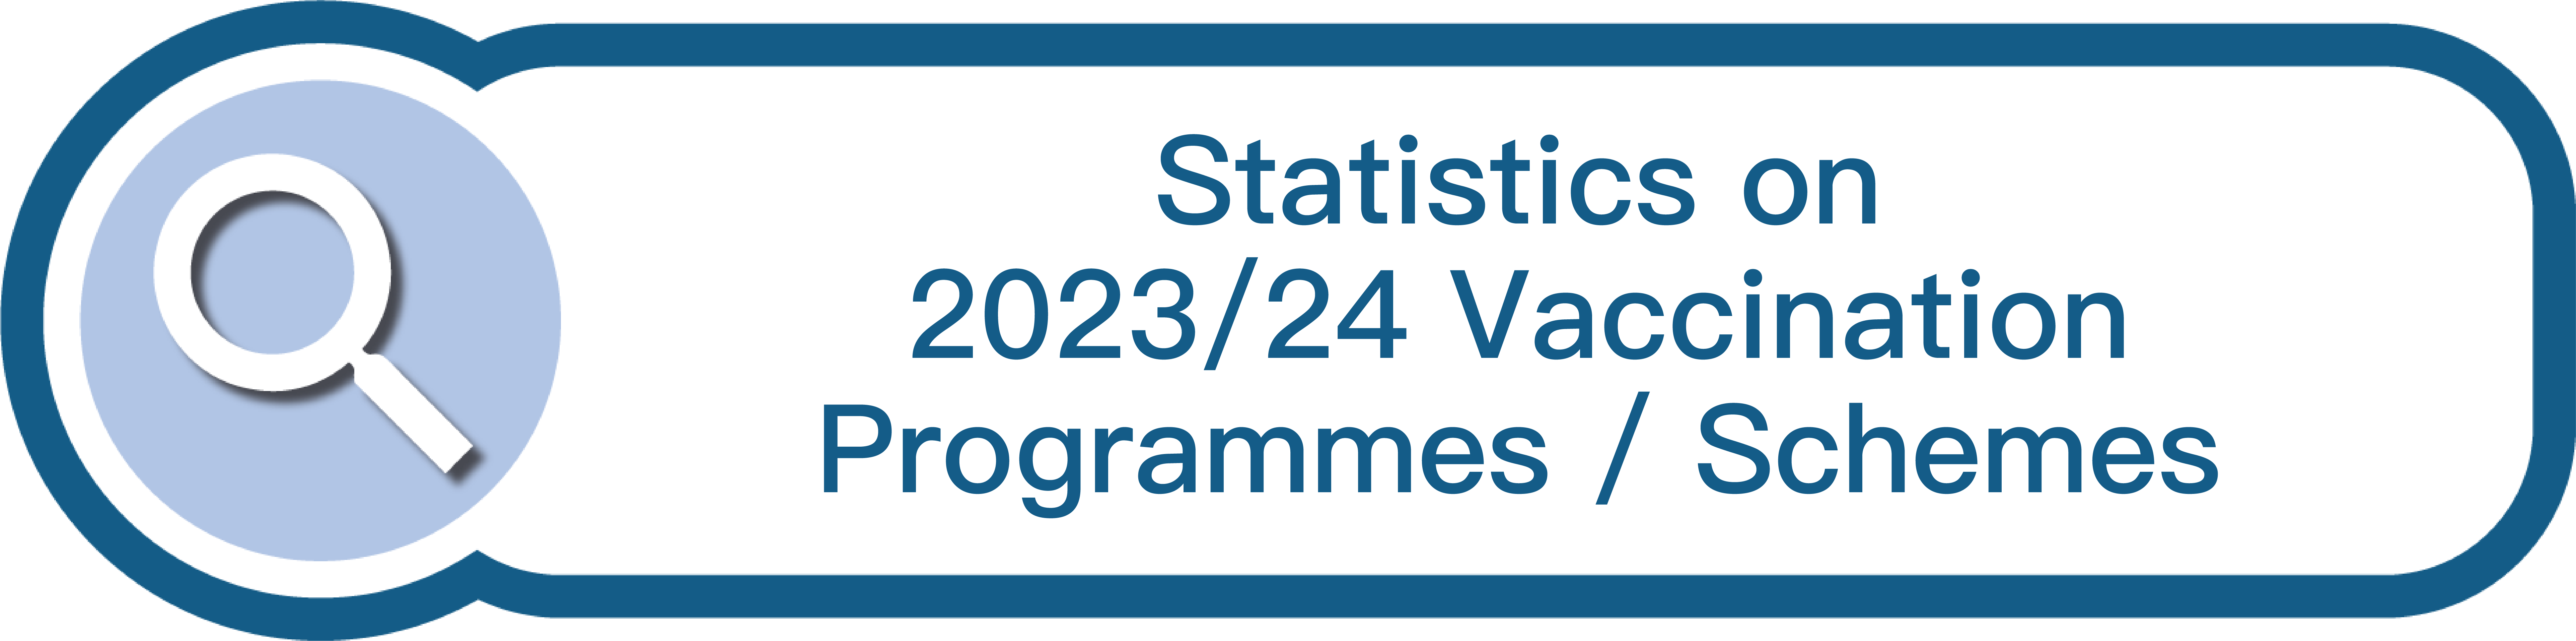 Statistics on 2023/24 Vaccination Programmes/Schemes